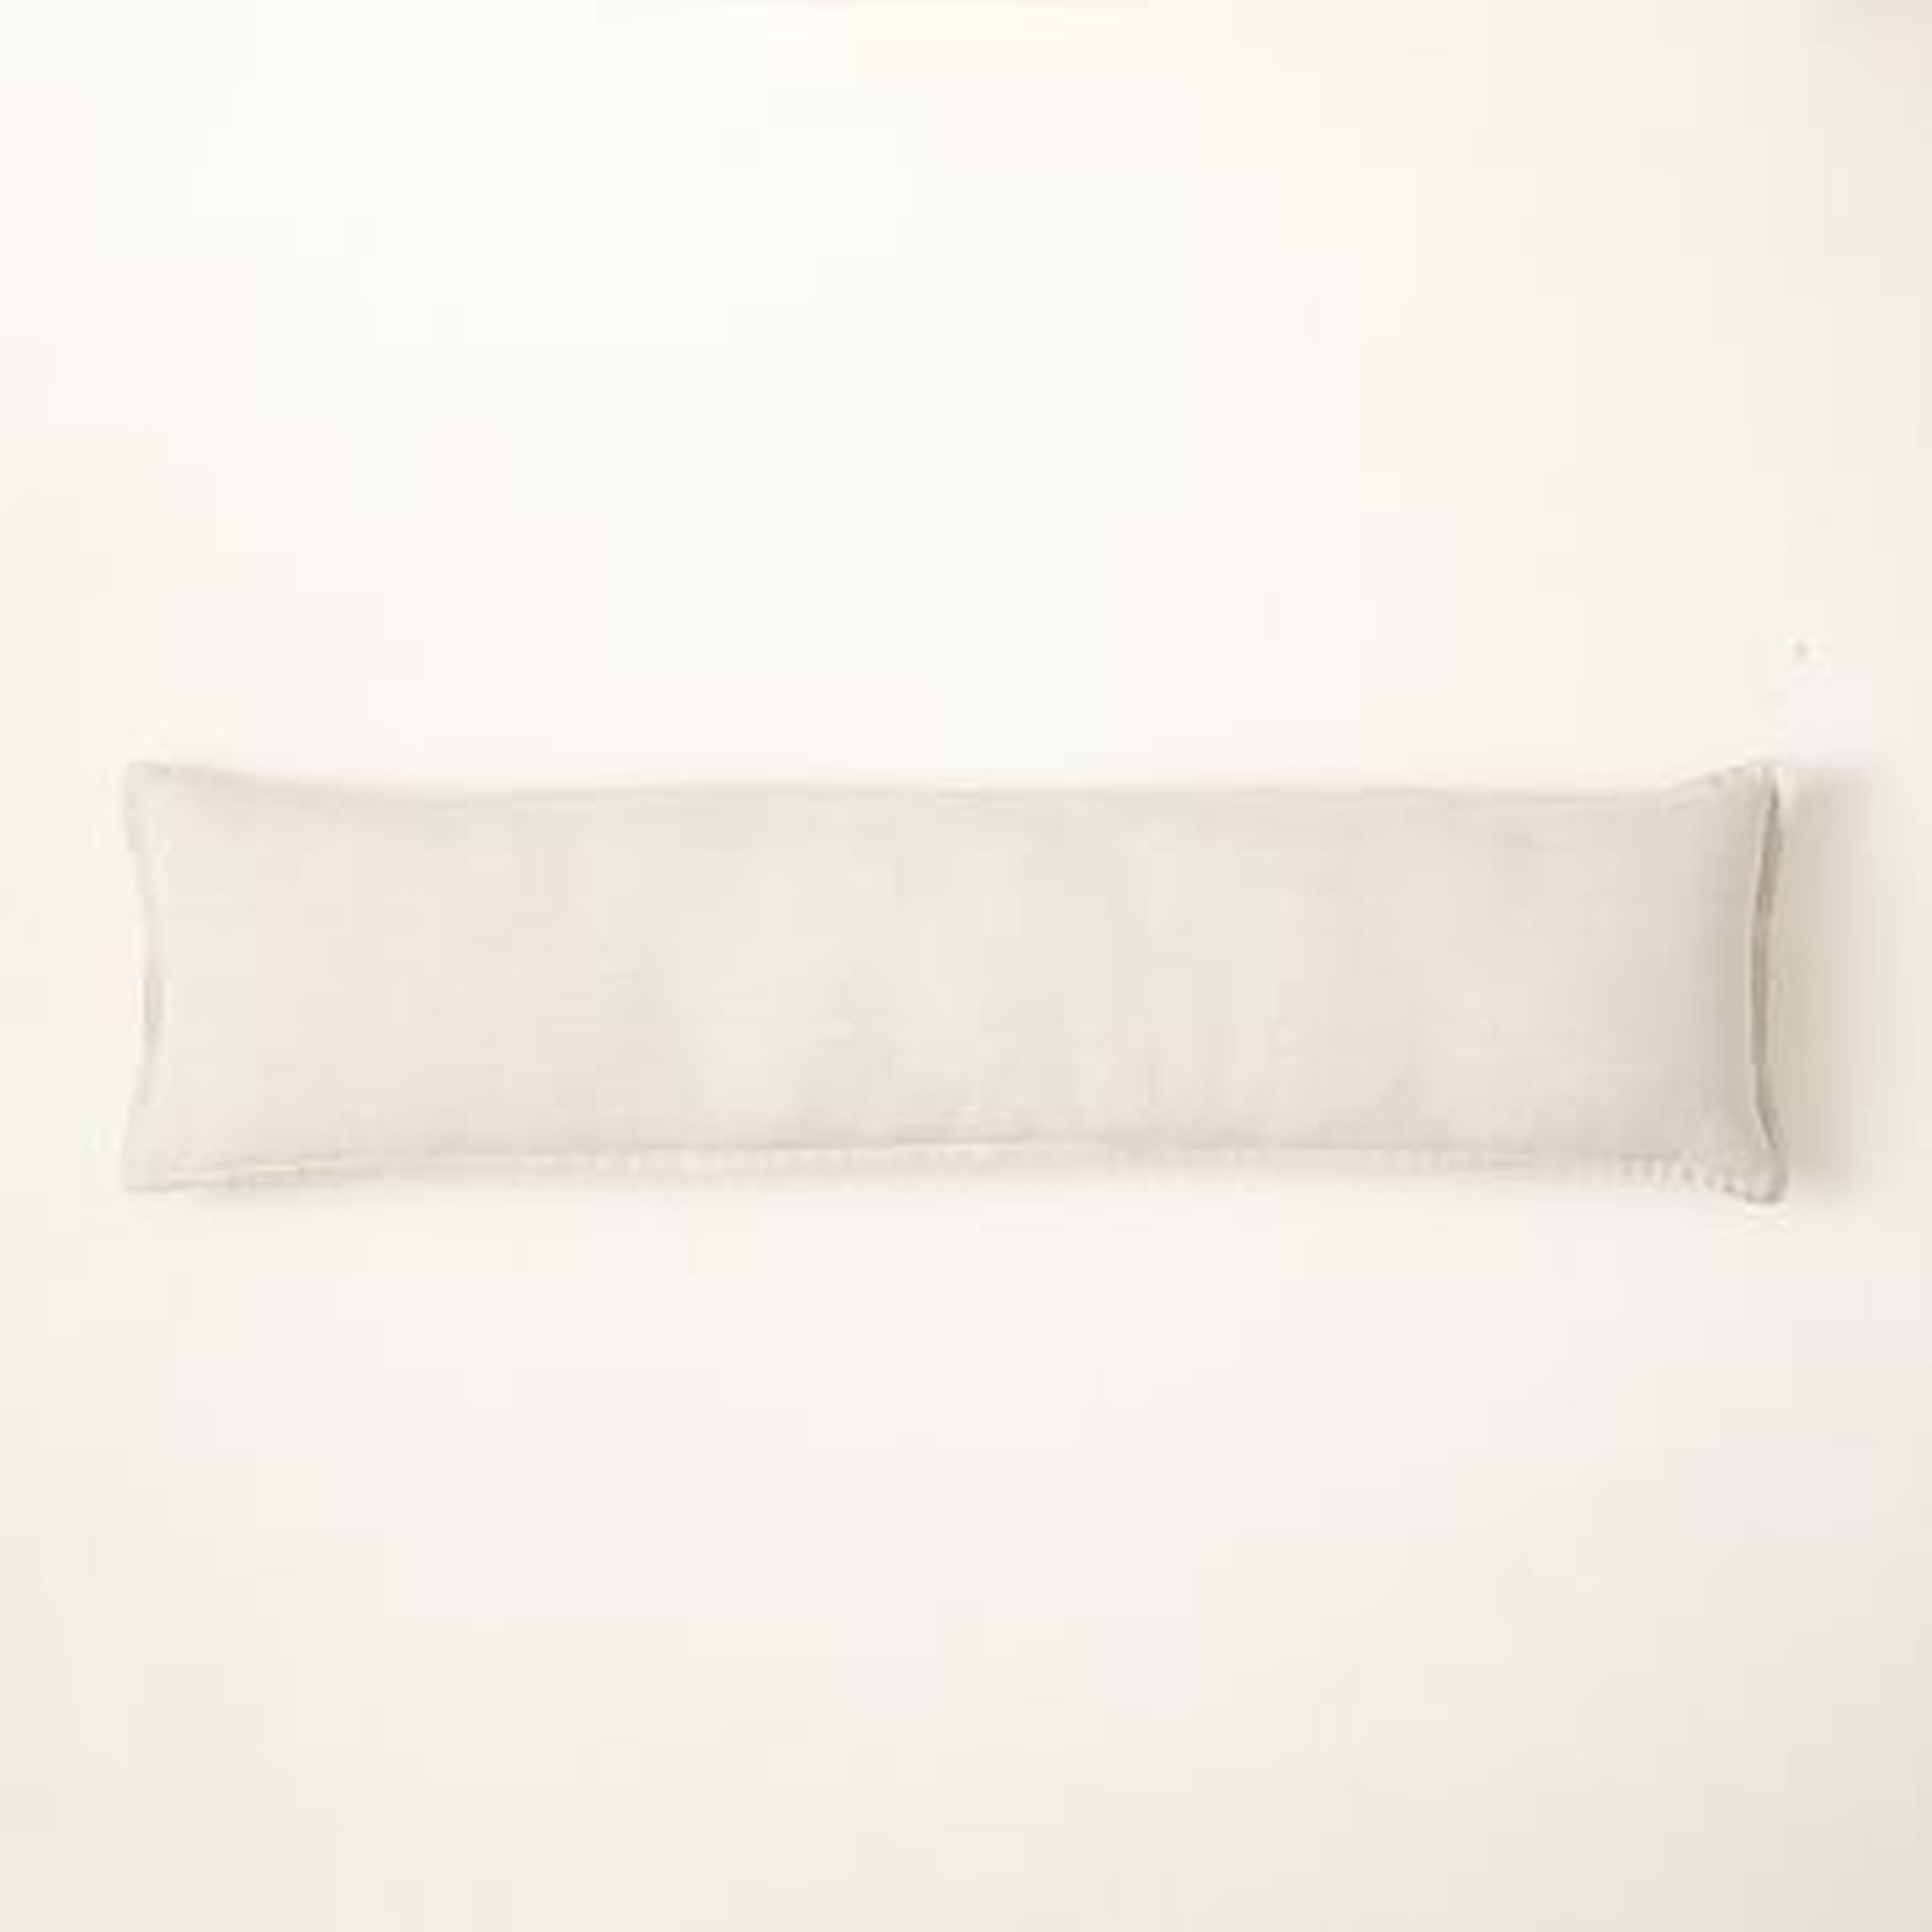 European Flax Linen Pillow Cover, 12"x46", Natural - West Elm